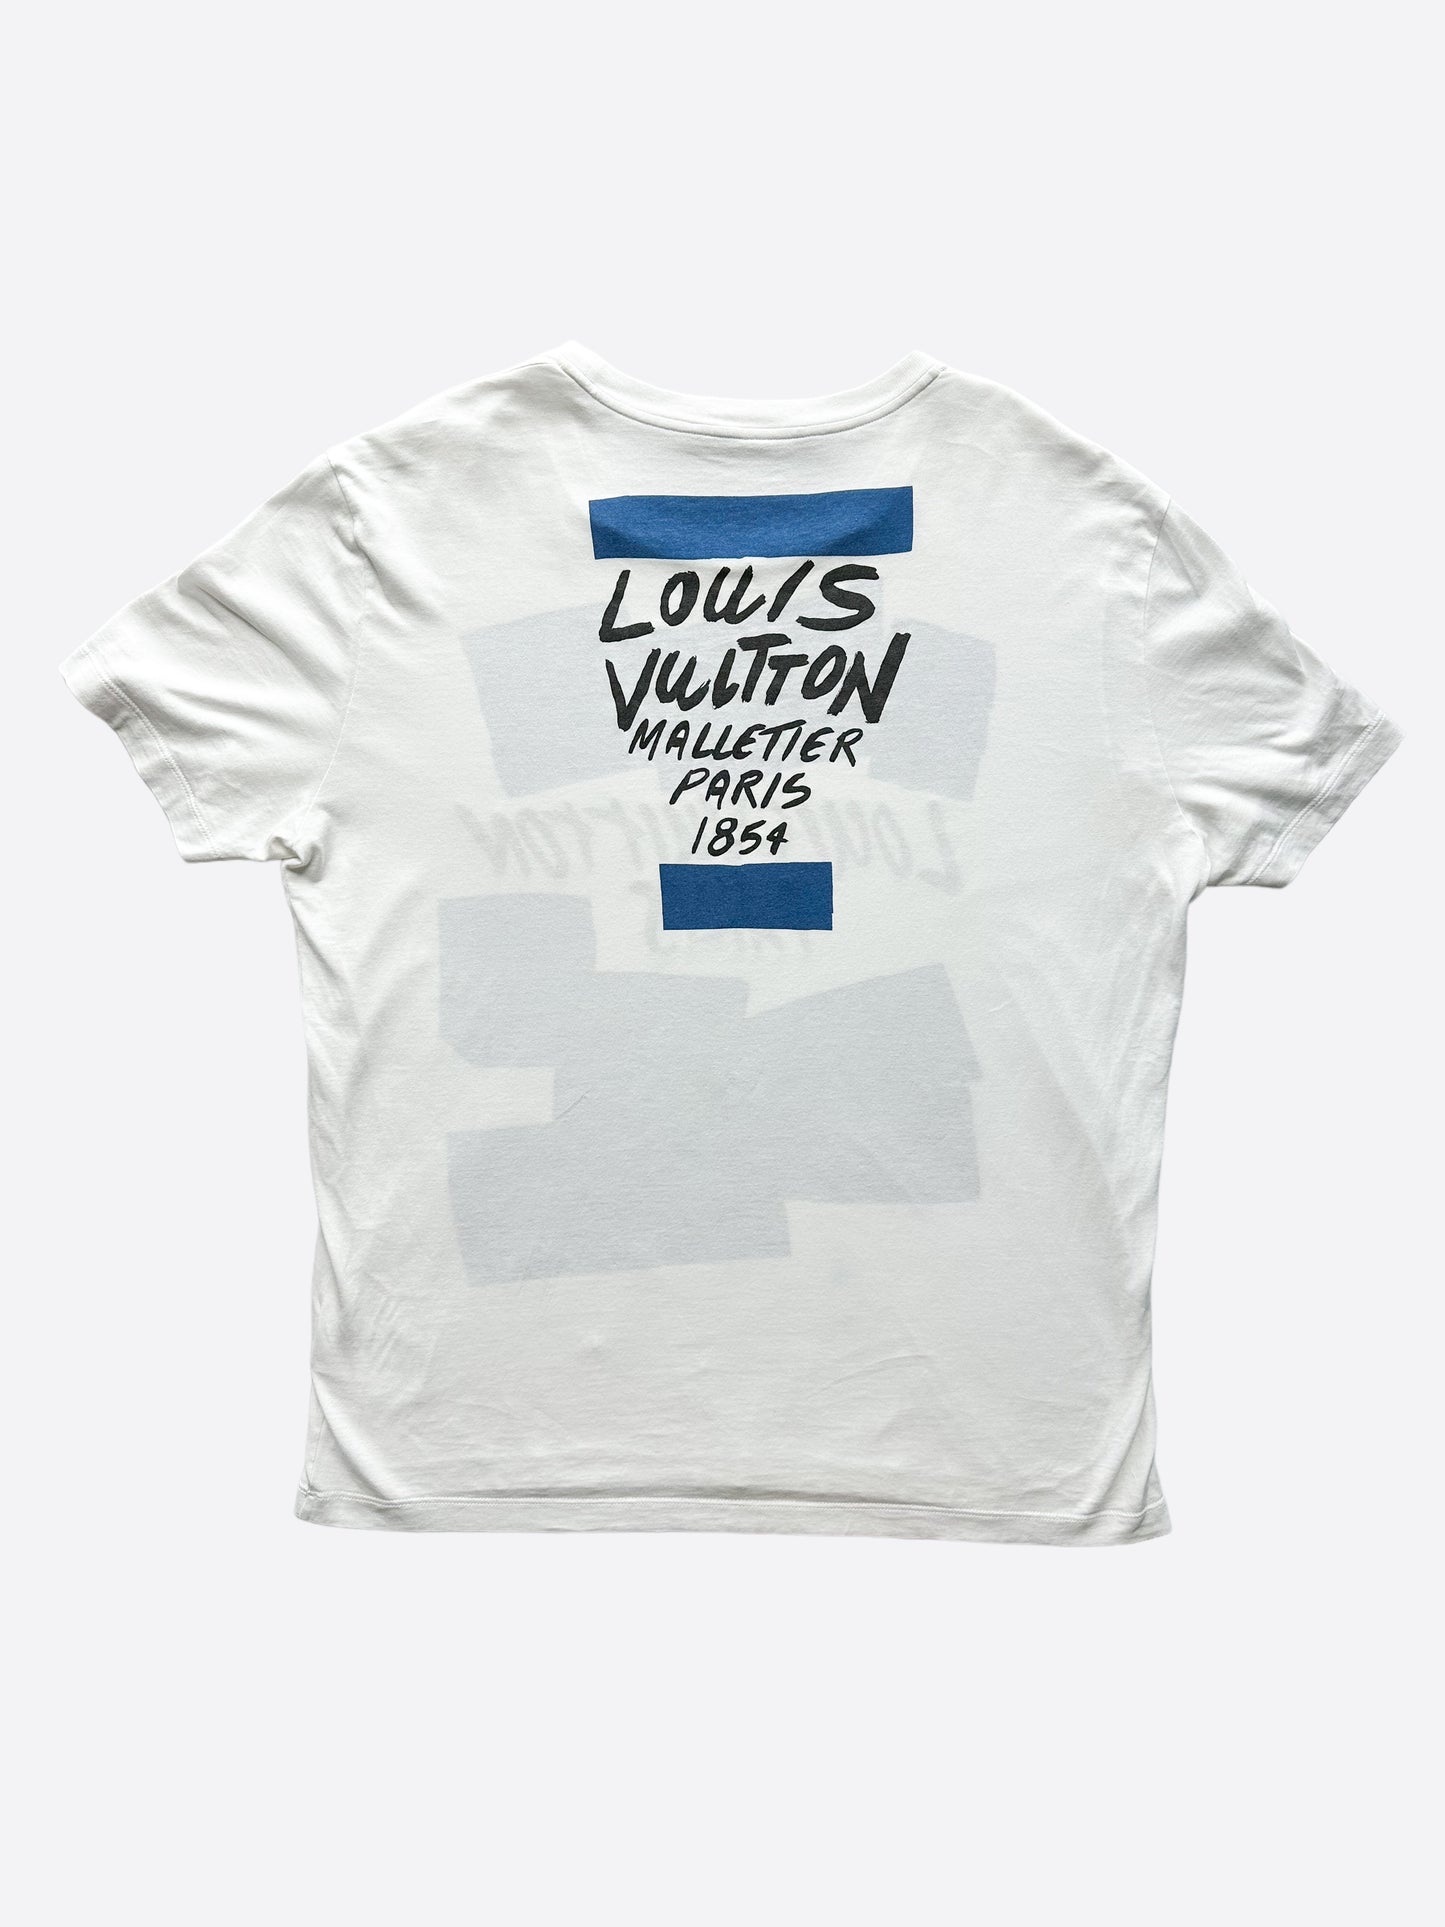 Louis Vuitton malletier paris 1854 t-shirt in blue PRE-OWNED